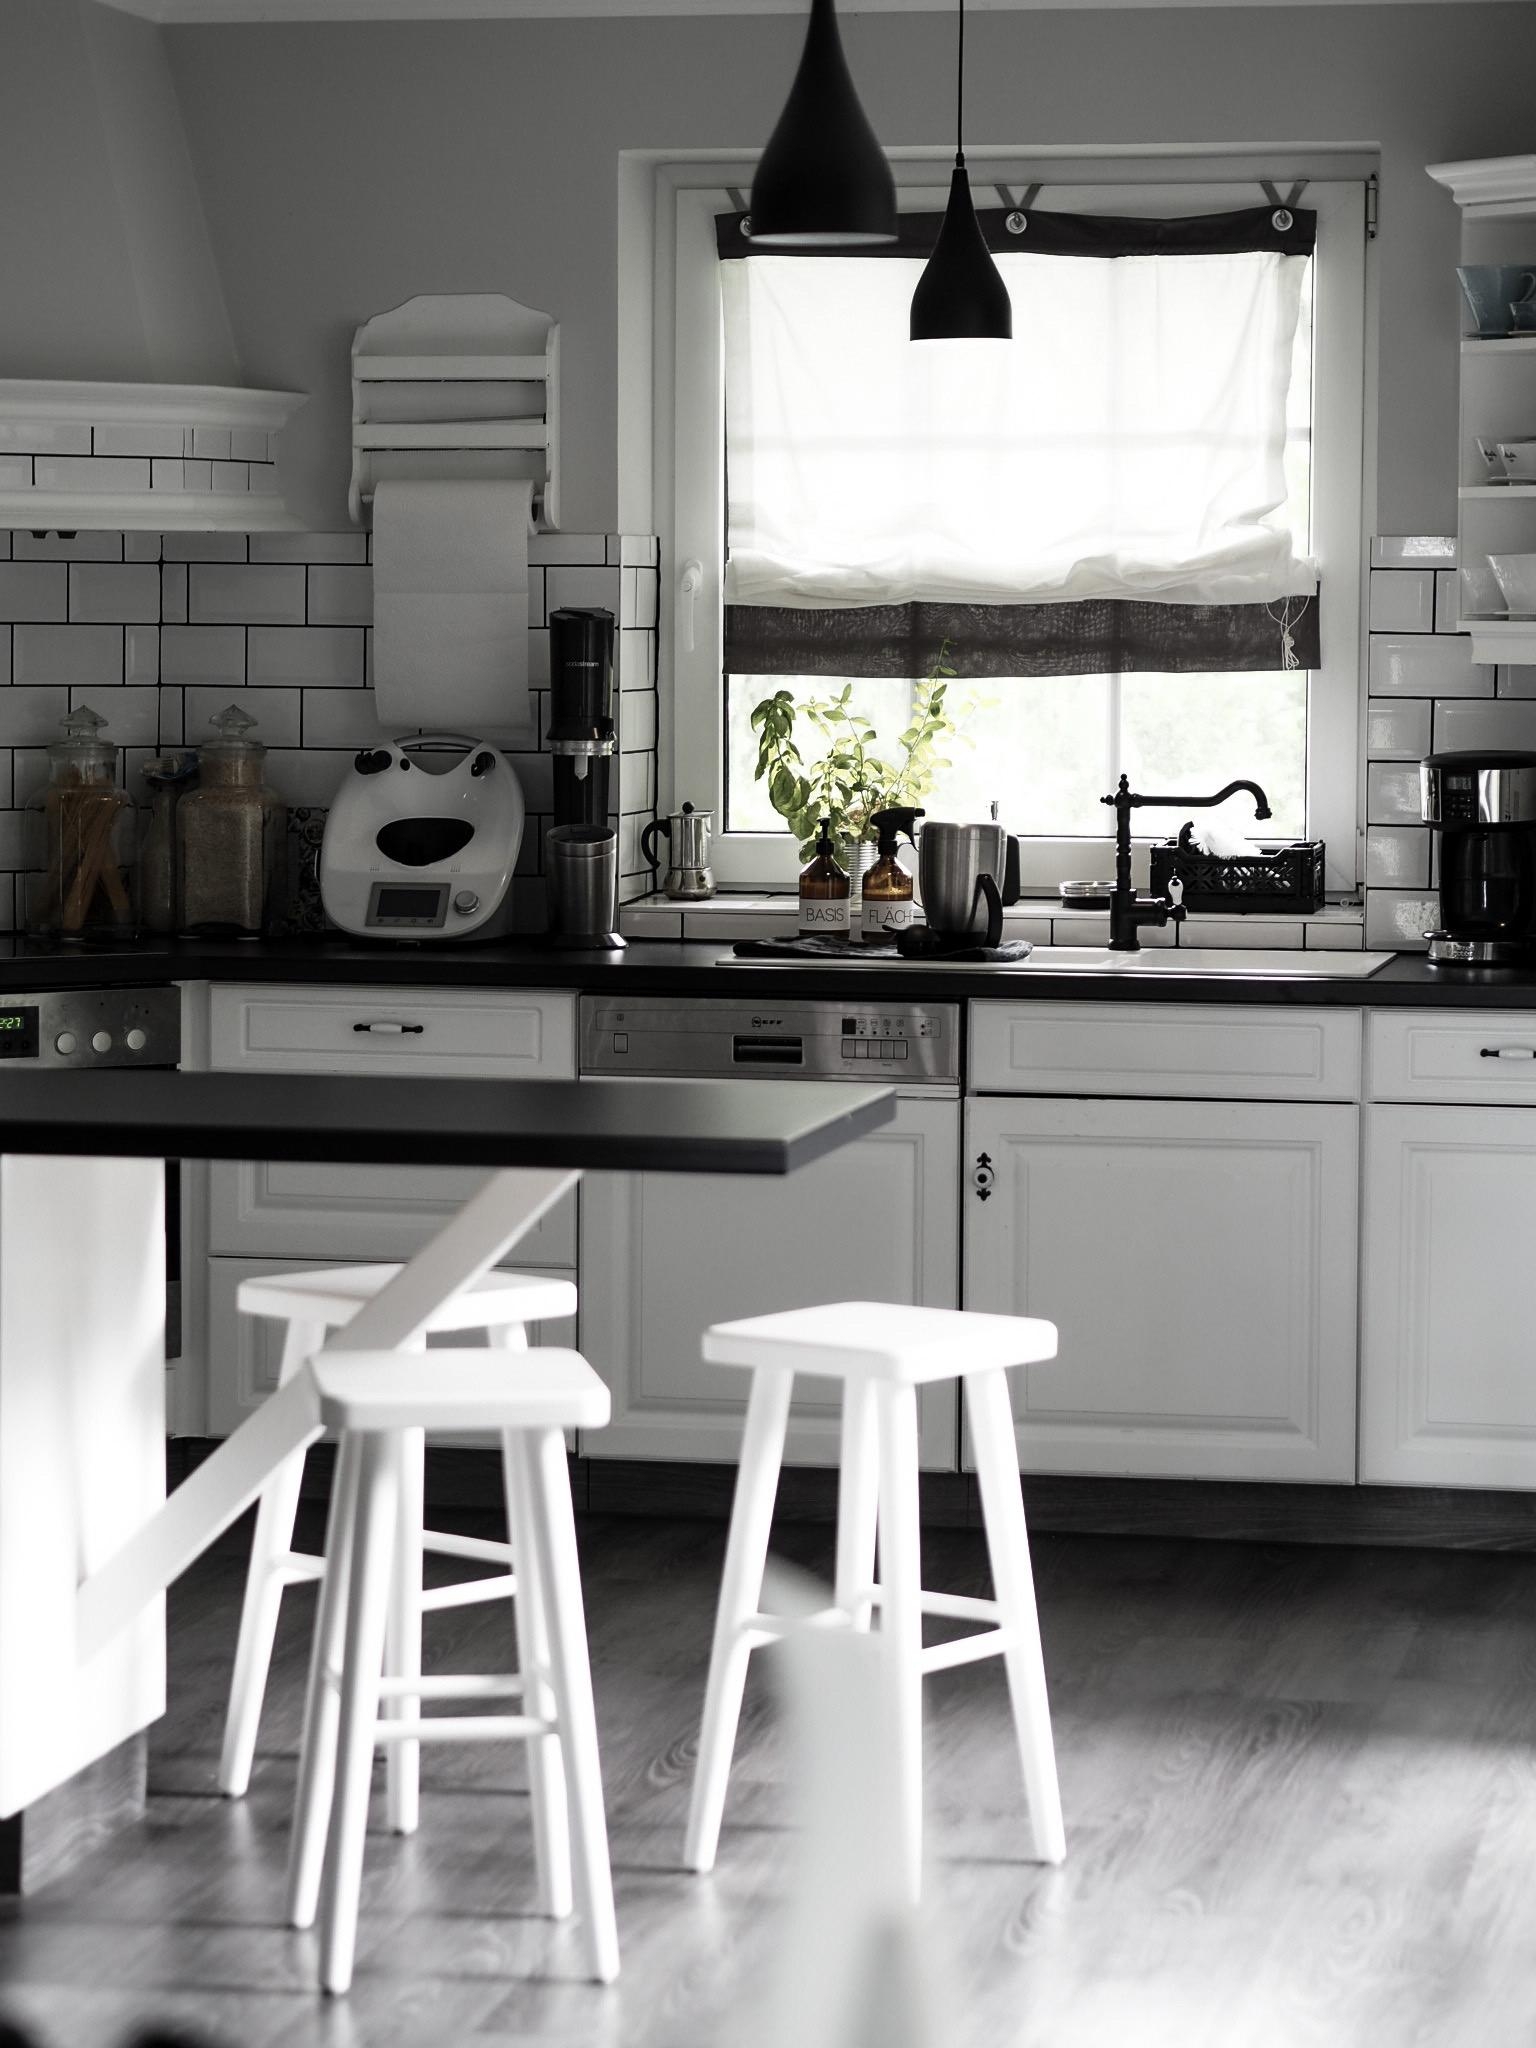 Liebe Grüße aus der Küche #couchstyle#interiordesign#landhausstil#myinterior#kitchen#kitchenstories 